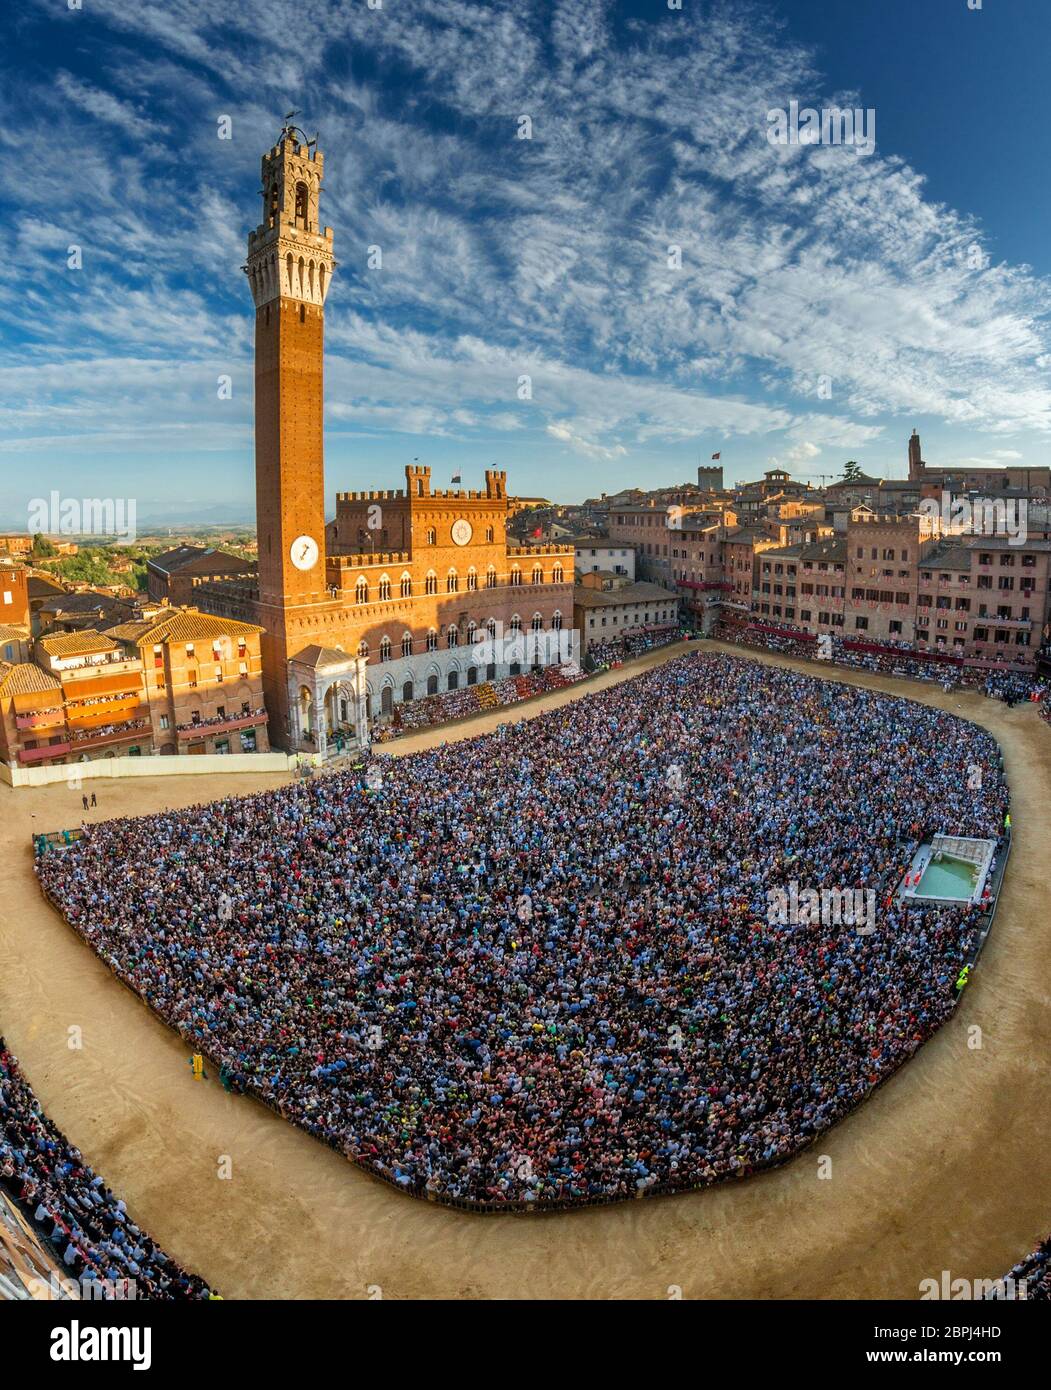 sienne, piazza del campo plein de personnes vues depuis la tour du palais sansedoni pendant les jours de palio Banque D'Images